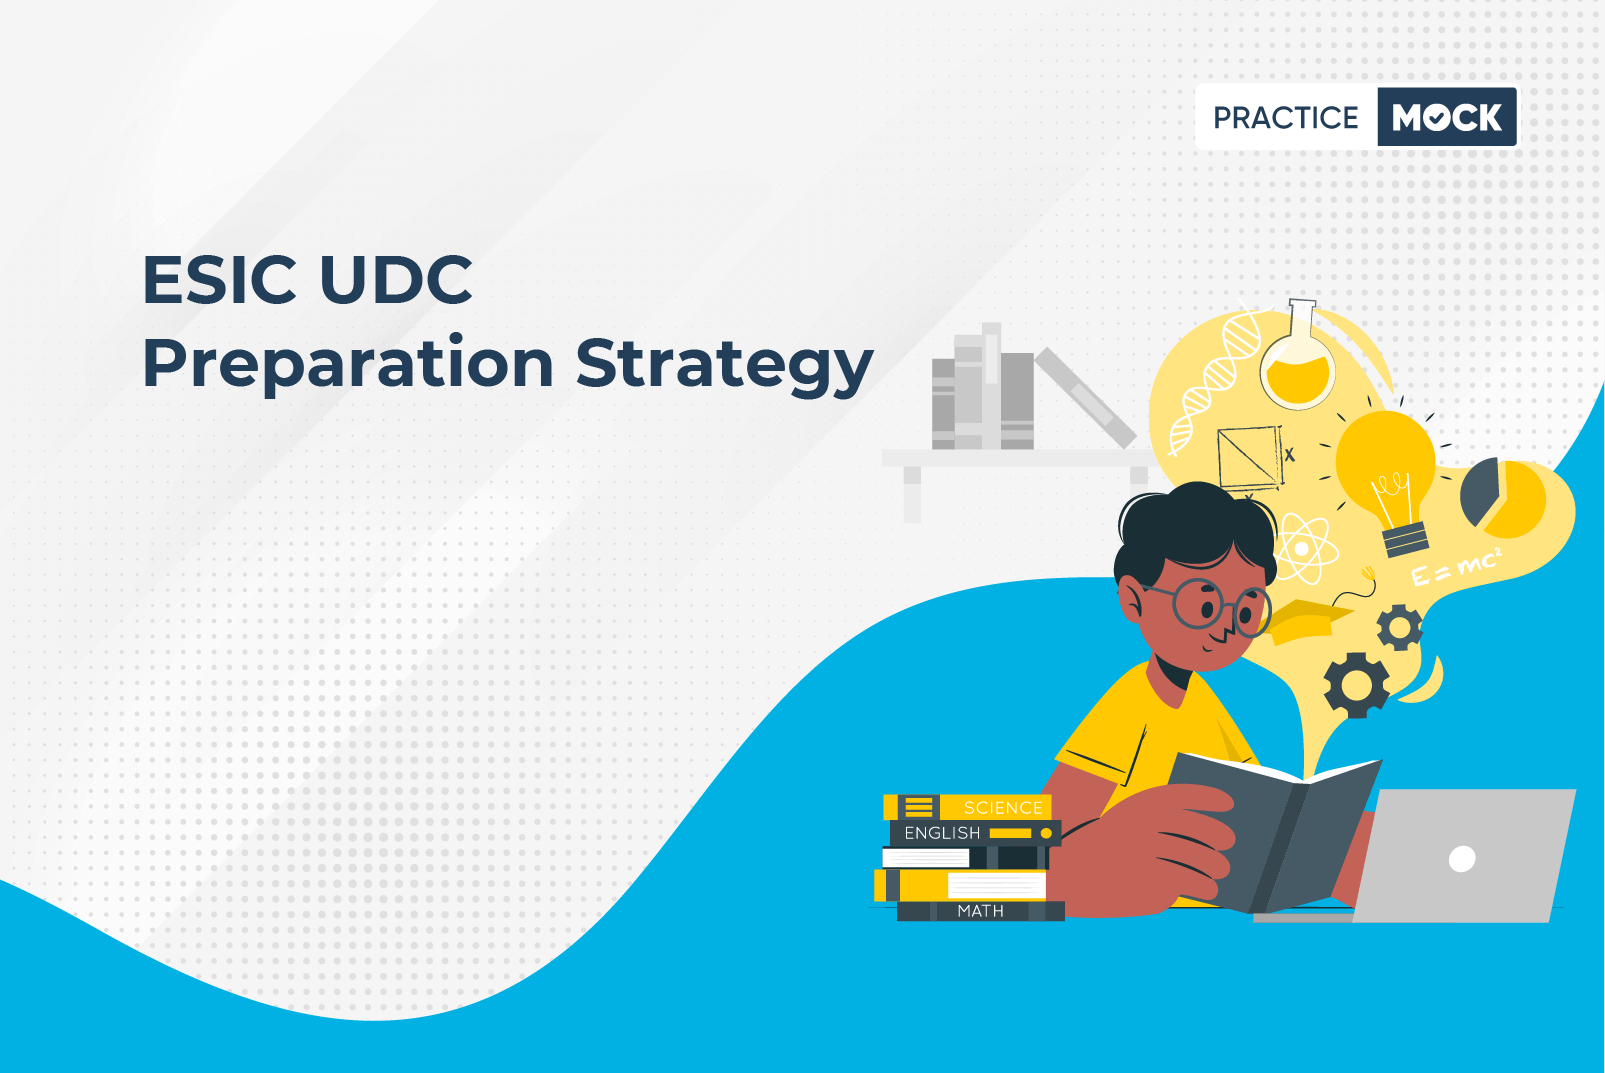 ESIC UDC Preparation Strategy